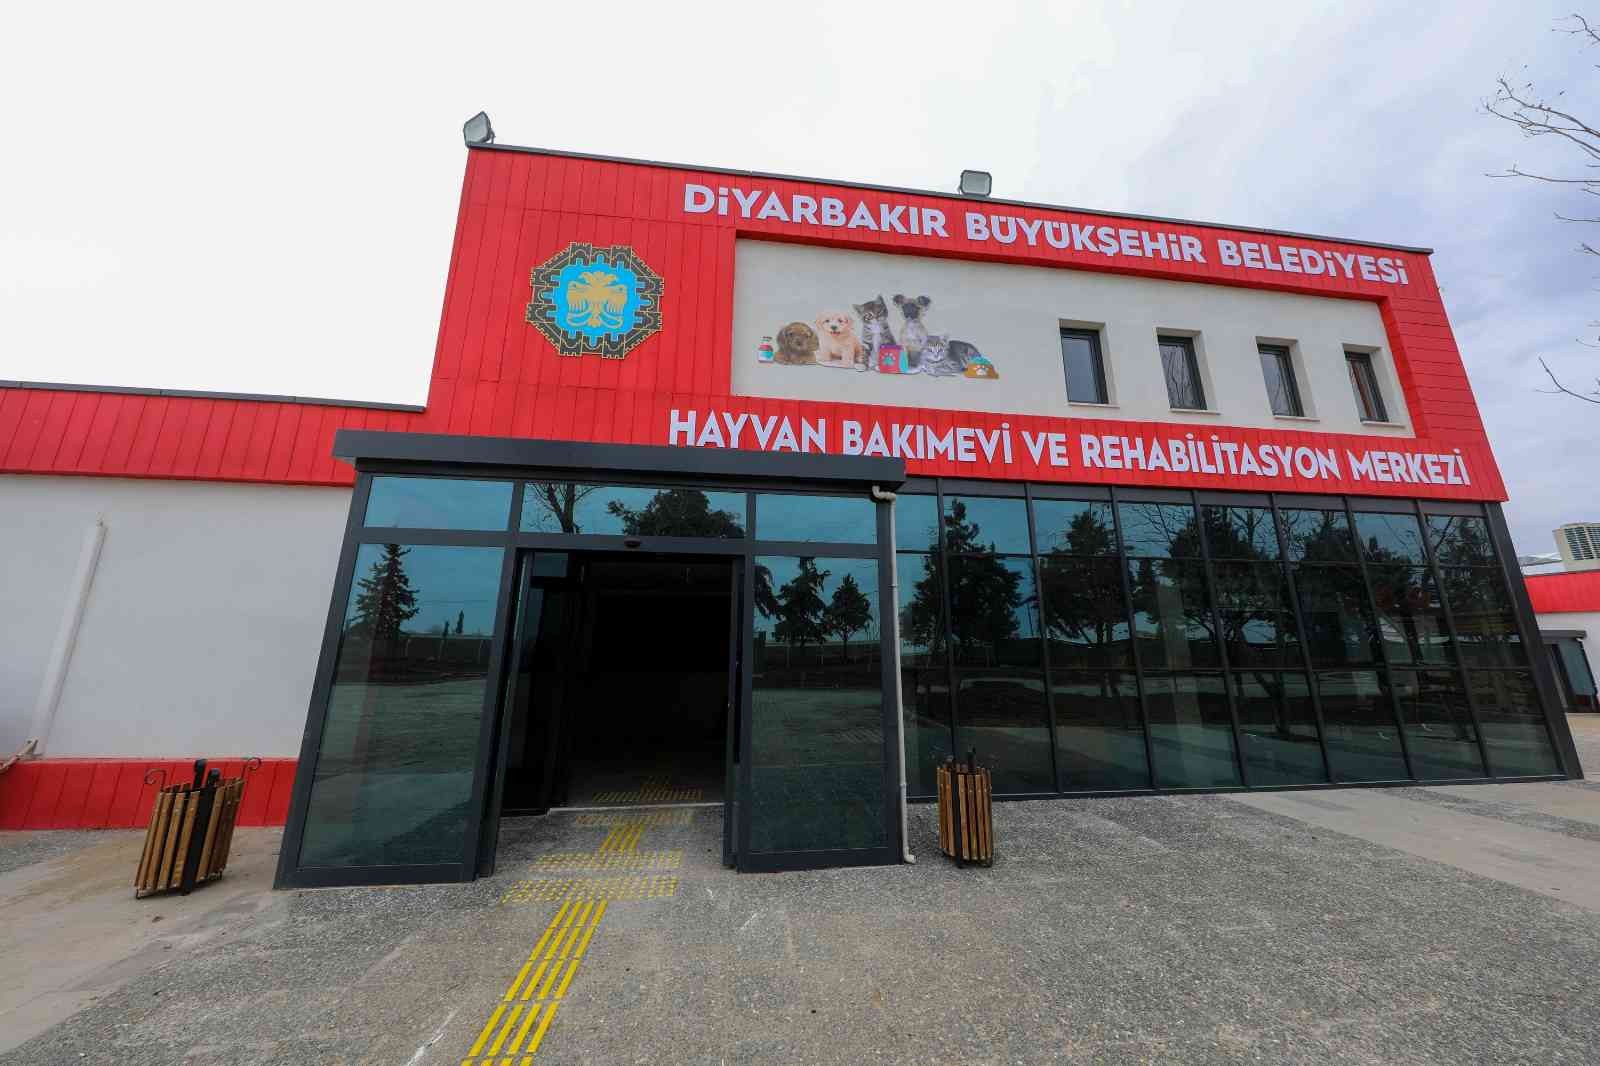 Diyarbakır’da ‘Can Dostlarımızın’ 5 yıldızlı yuvası açılıyor #diyarbakir